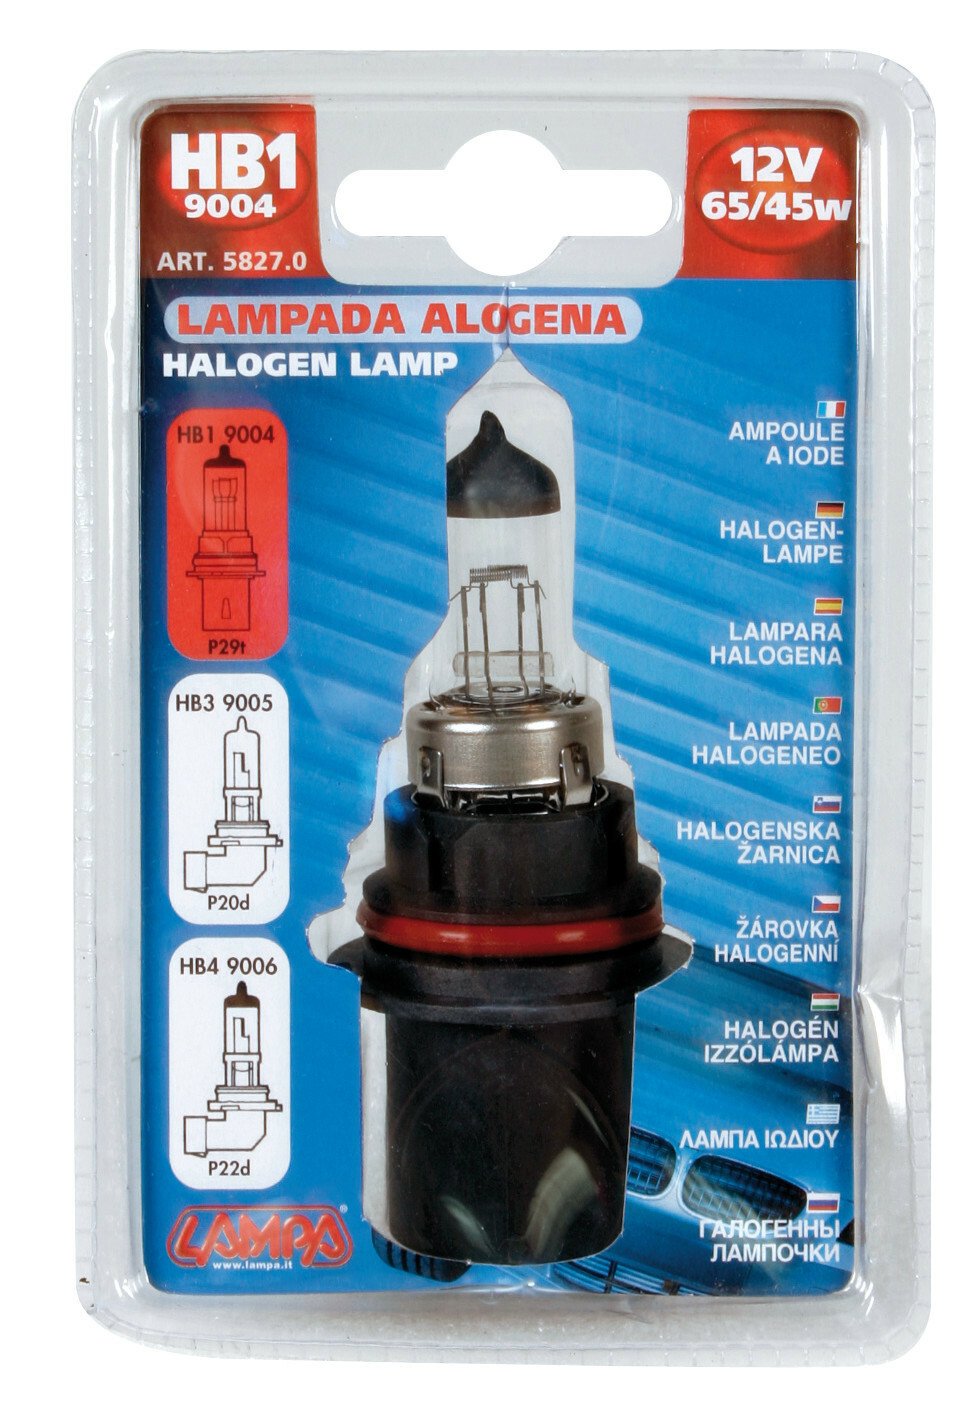 Lampa 12V classic bulb - HB1 9004 - 65/45W - P29t - 1 pcs thumb